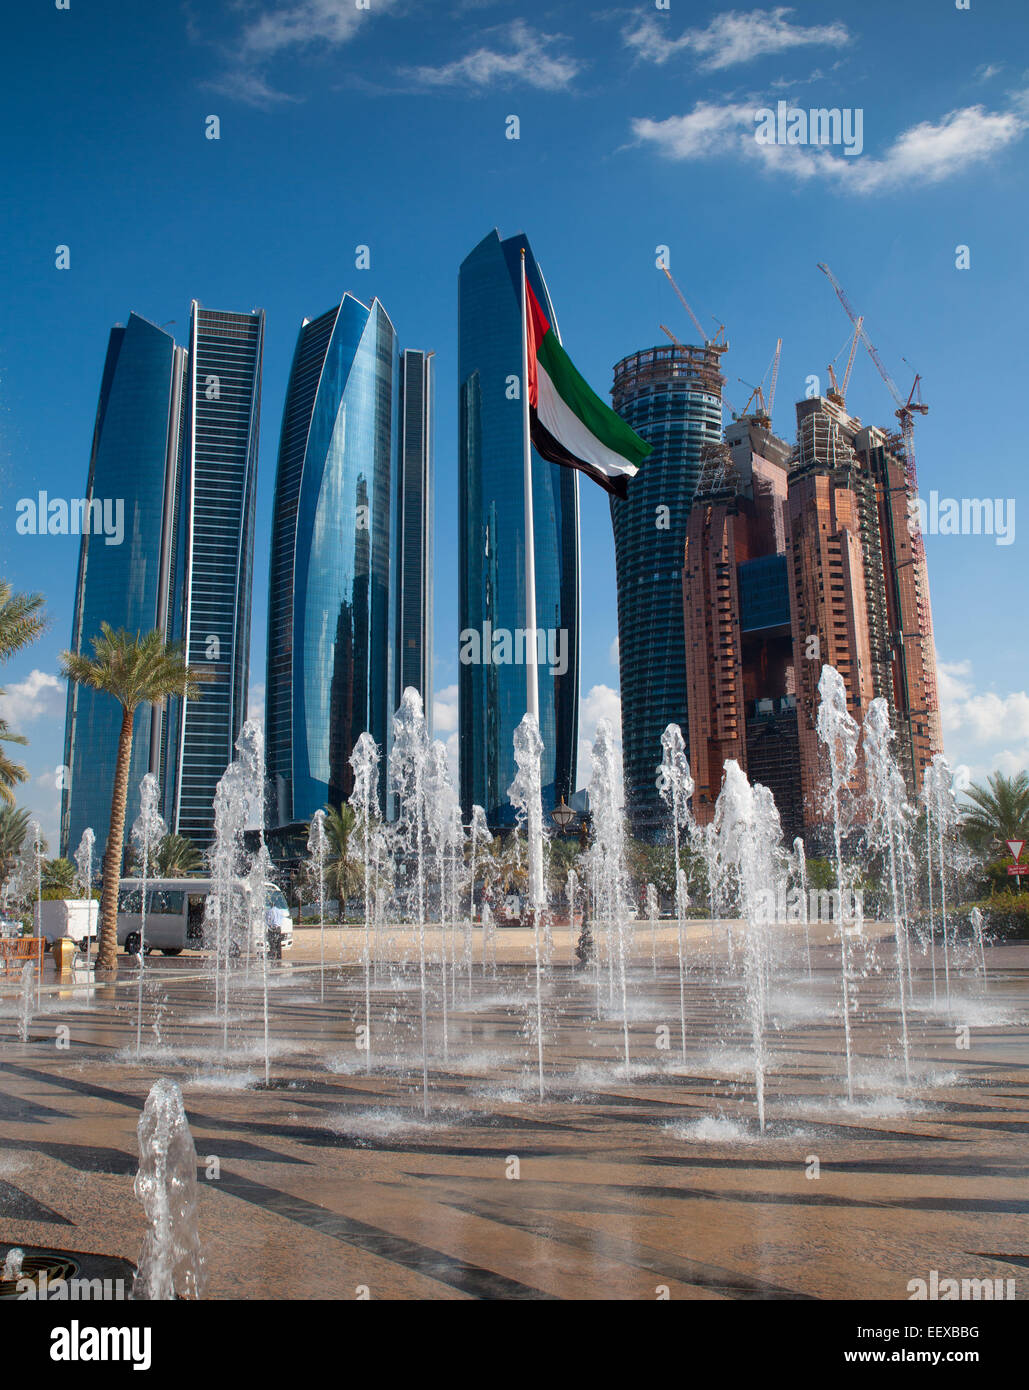 Wolkenkratzer der modernen Abu Dhabi, der Hauptstadt der Vereinigten Arabischen Emirate. Brunnen und Flagge der VAE im Vordergrund. Stadt im Hintergrund. Stockfoto